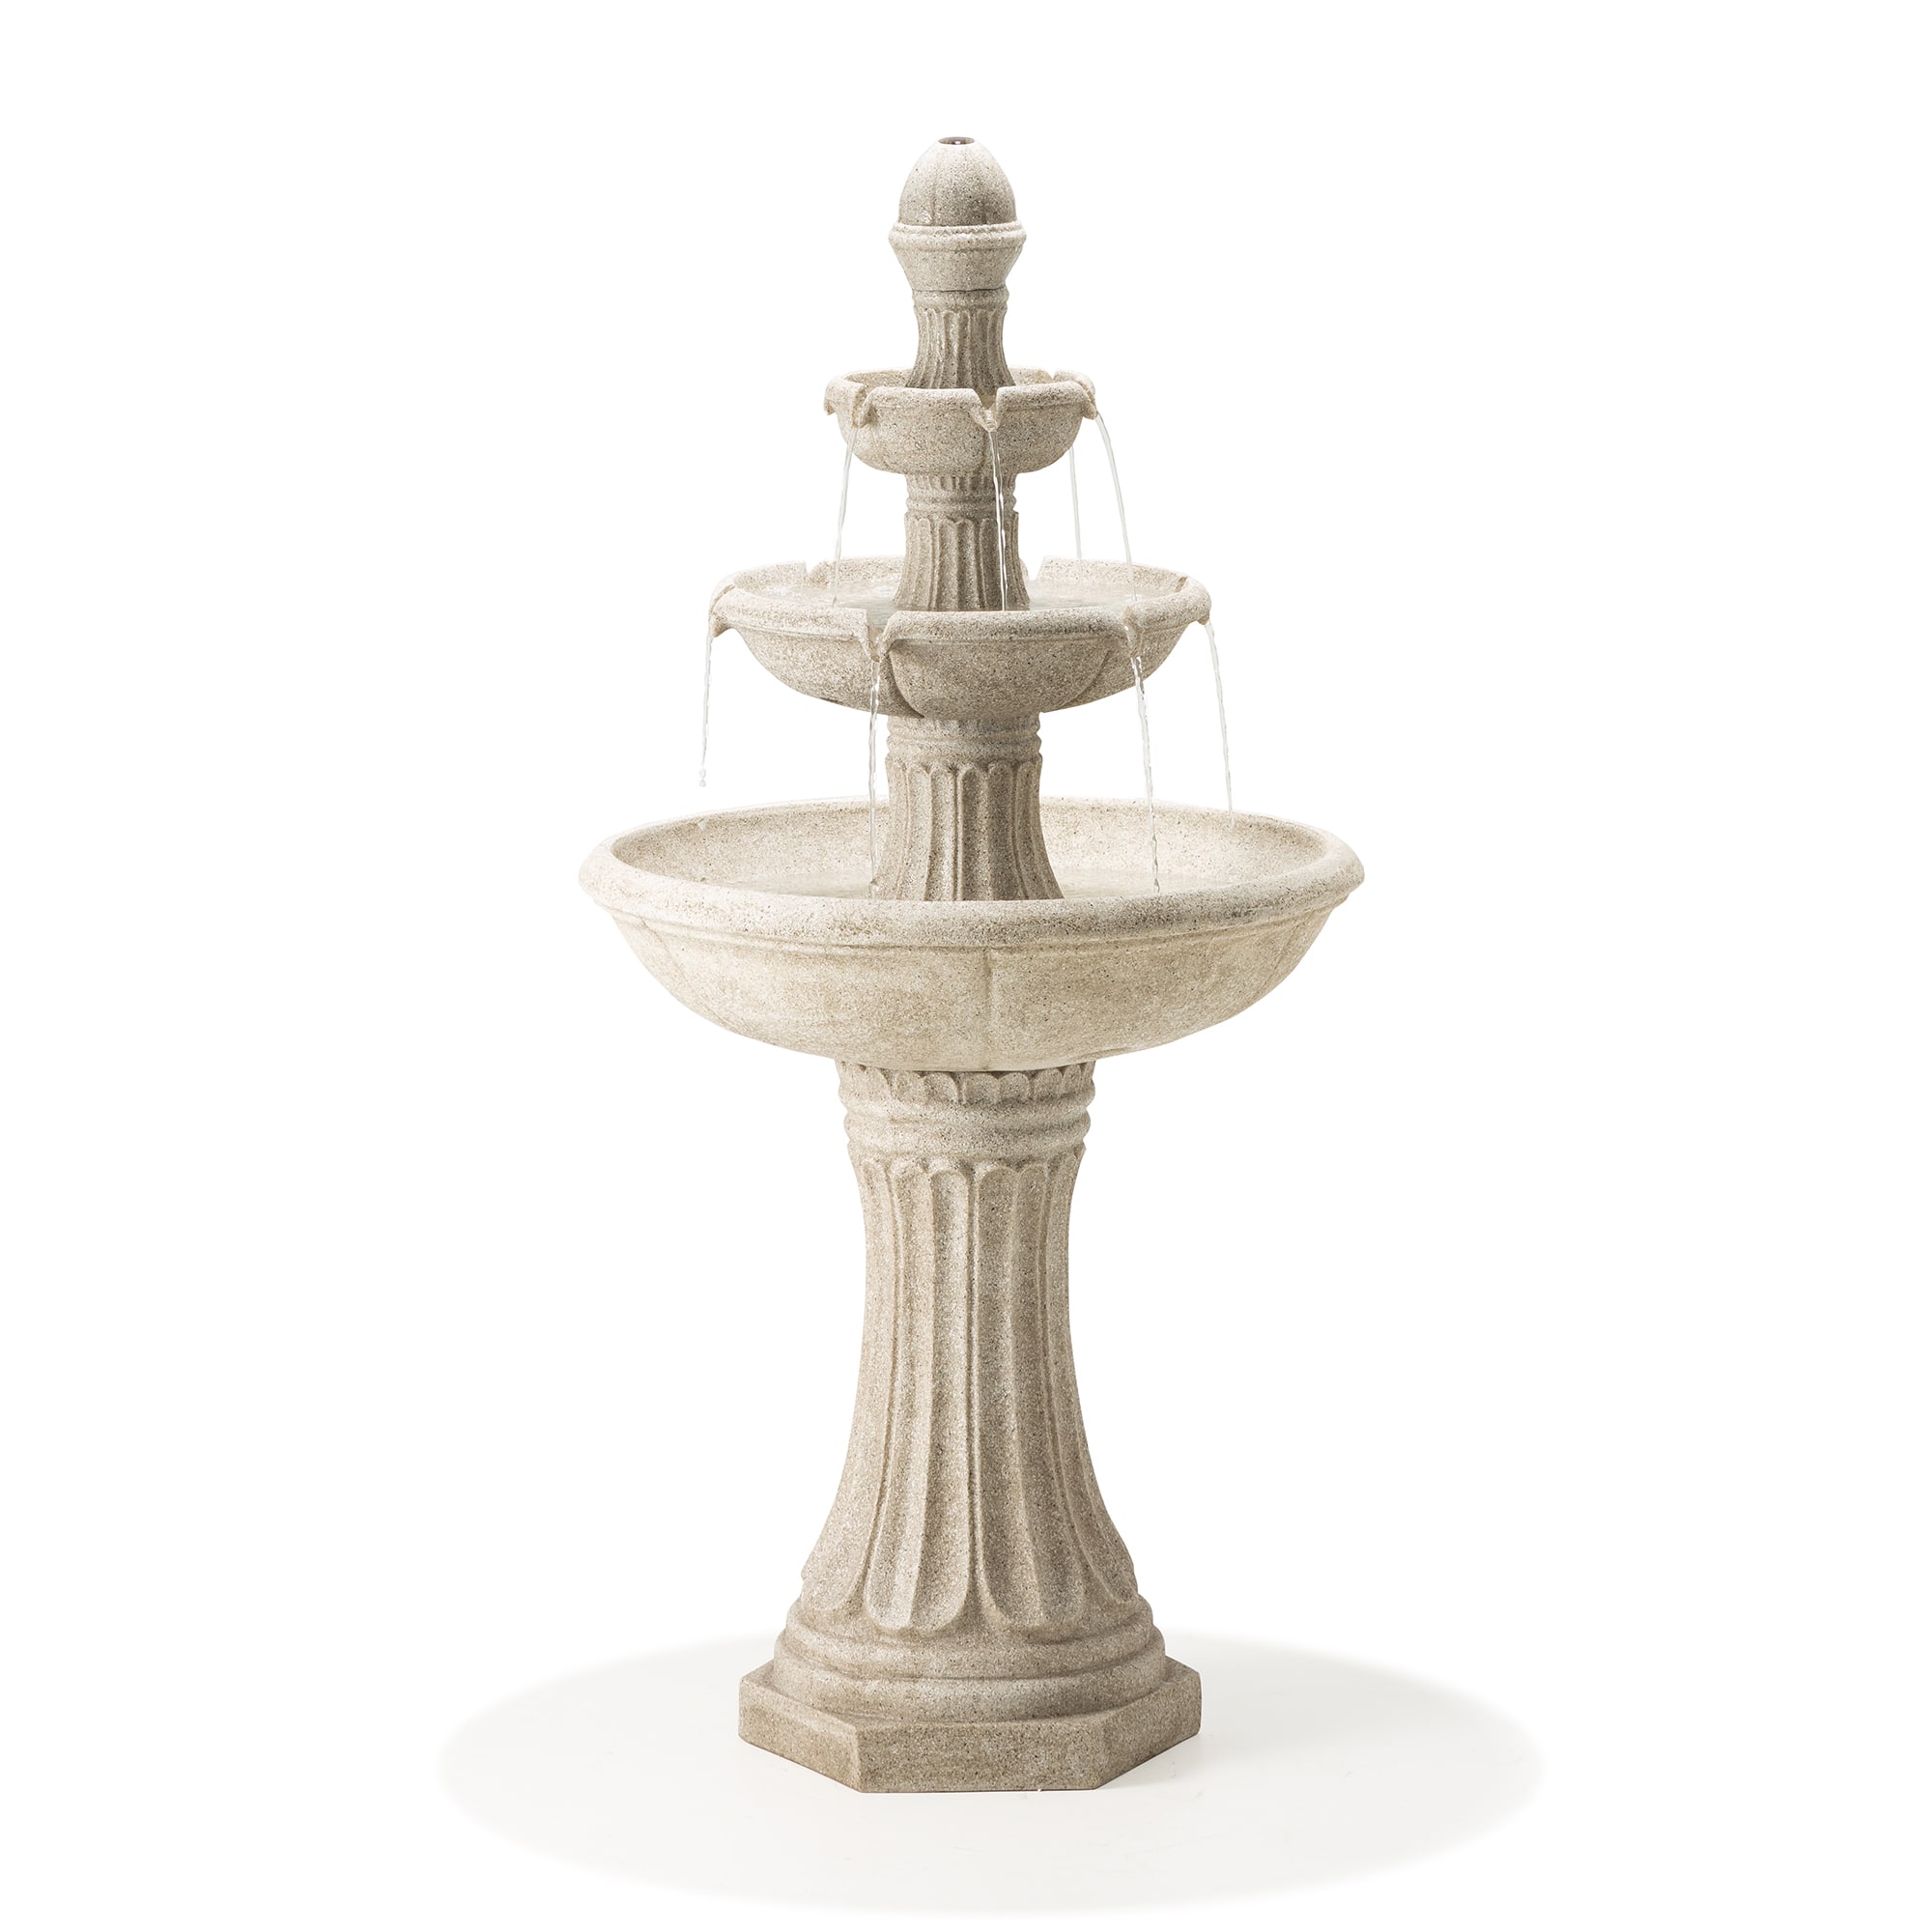 Glitzhome® 45" 3-Tier Ceramic Outdoor Fountain